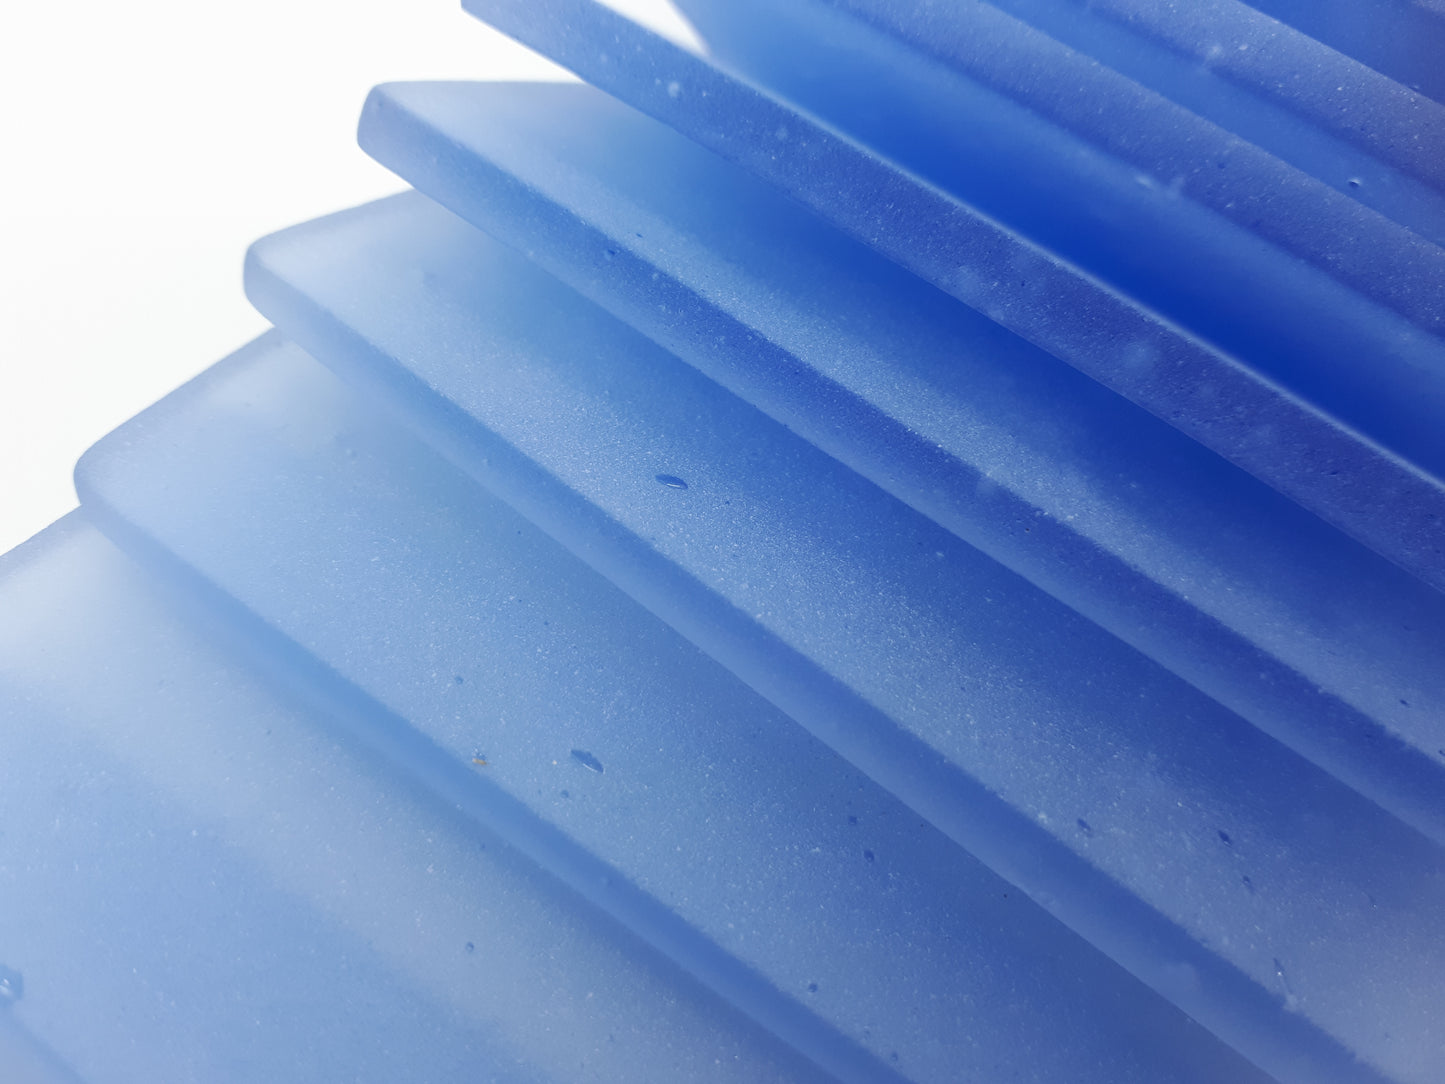 Sky blue sea glass place cards - Set of 20 rectangular tiles